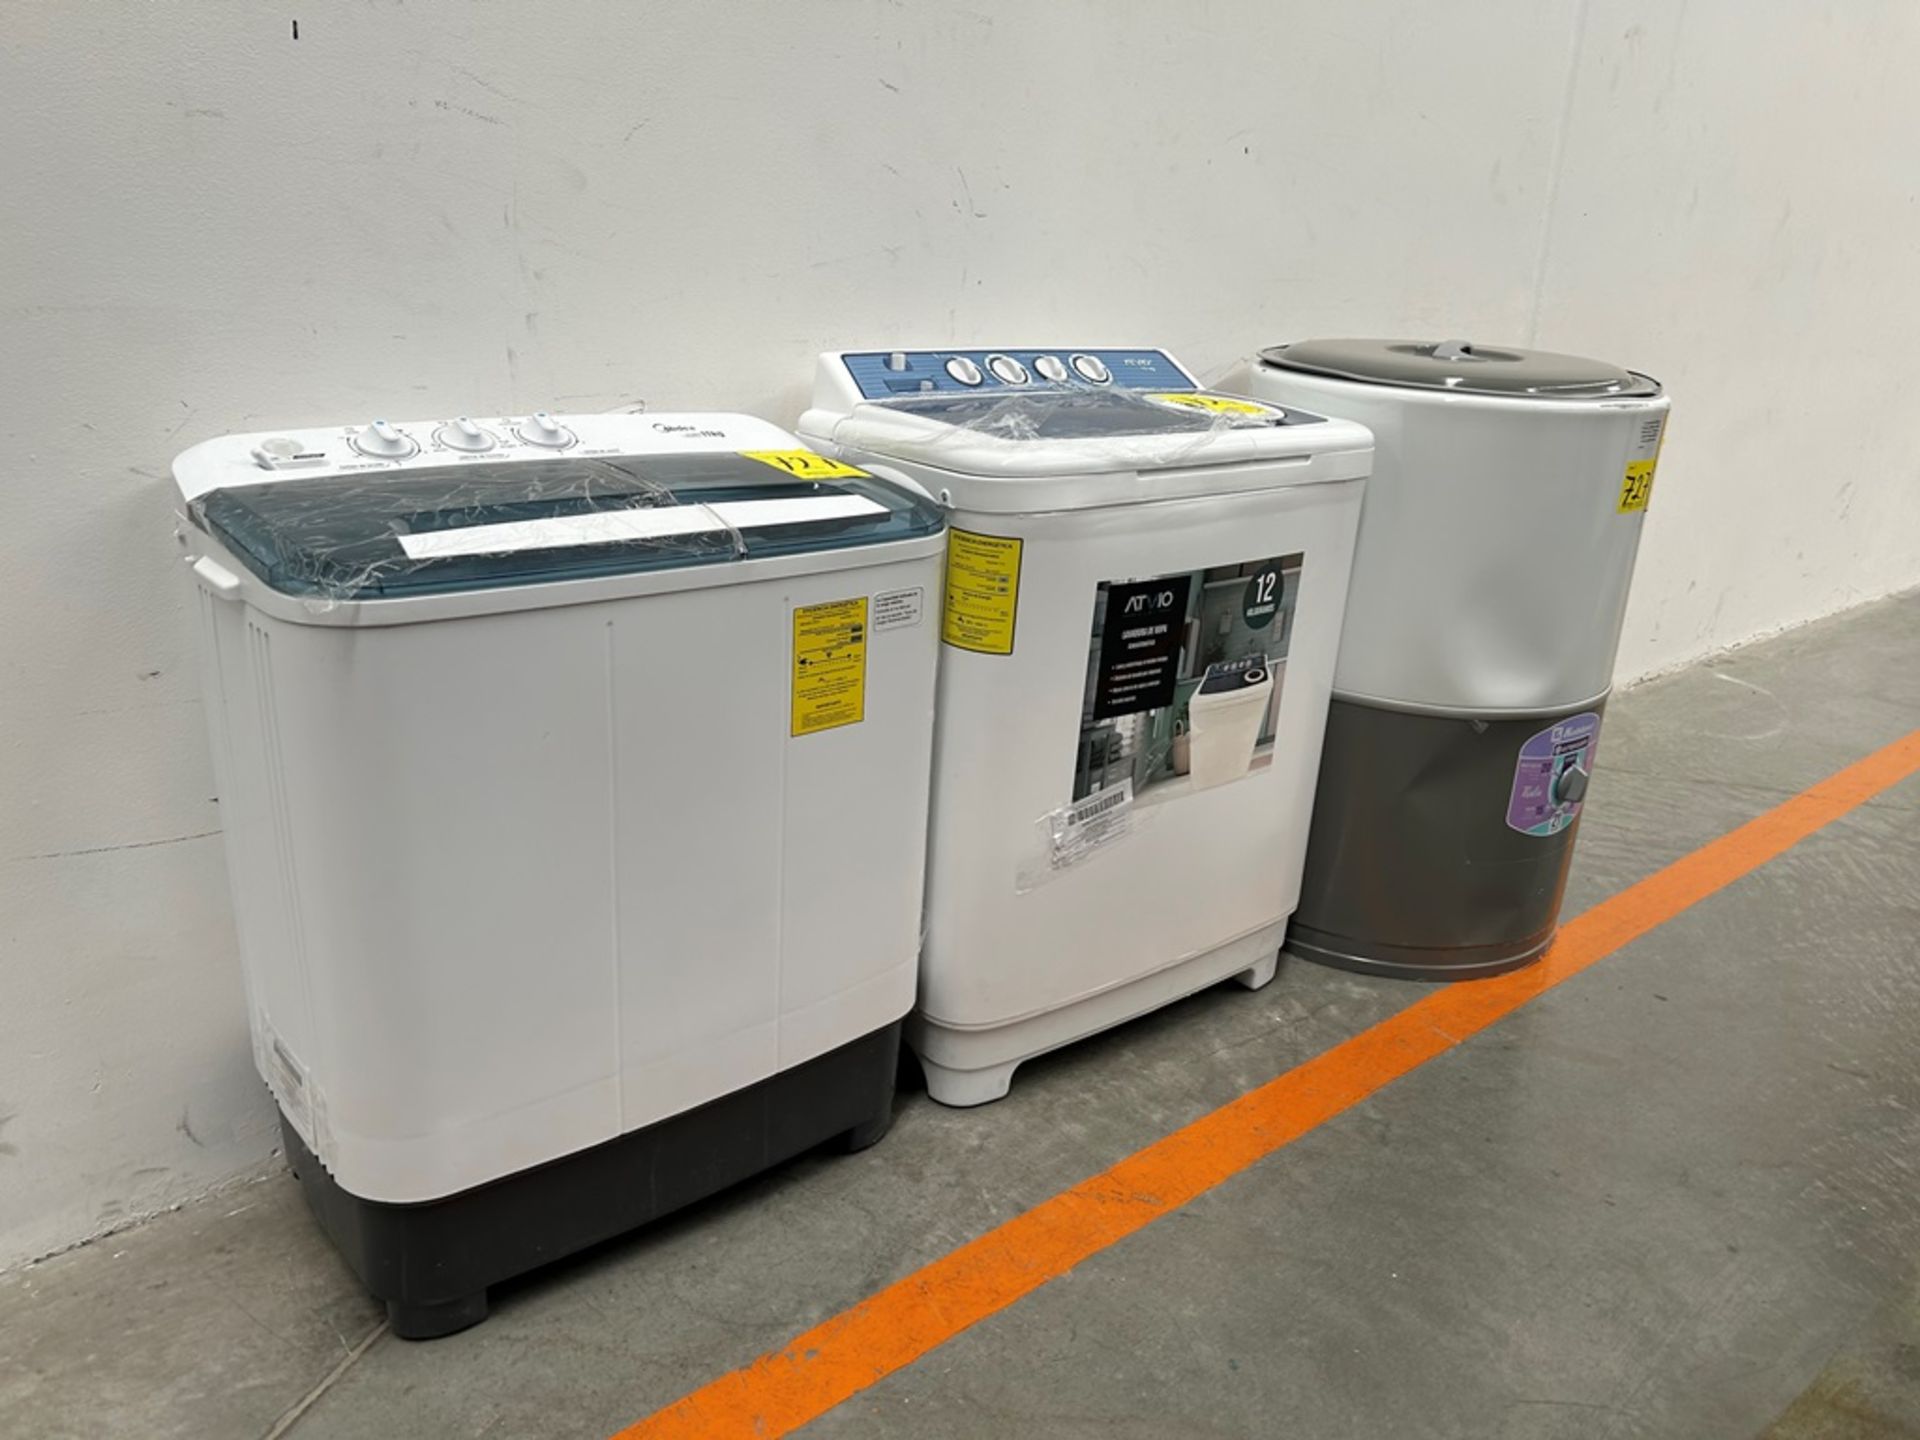 Lote de 3 lavadoras contiene: 1 Lavadora de 21 KG, Marca KOBLENZ, Modelo LRKF21P, Serie 31522, Colo - Image 2 of 13